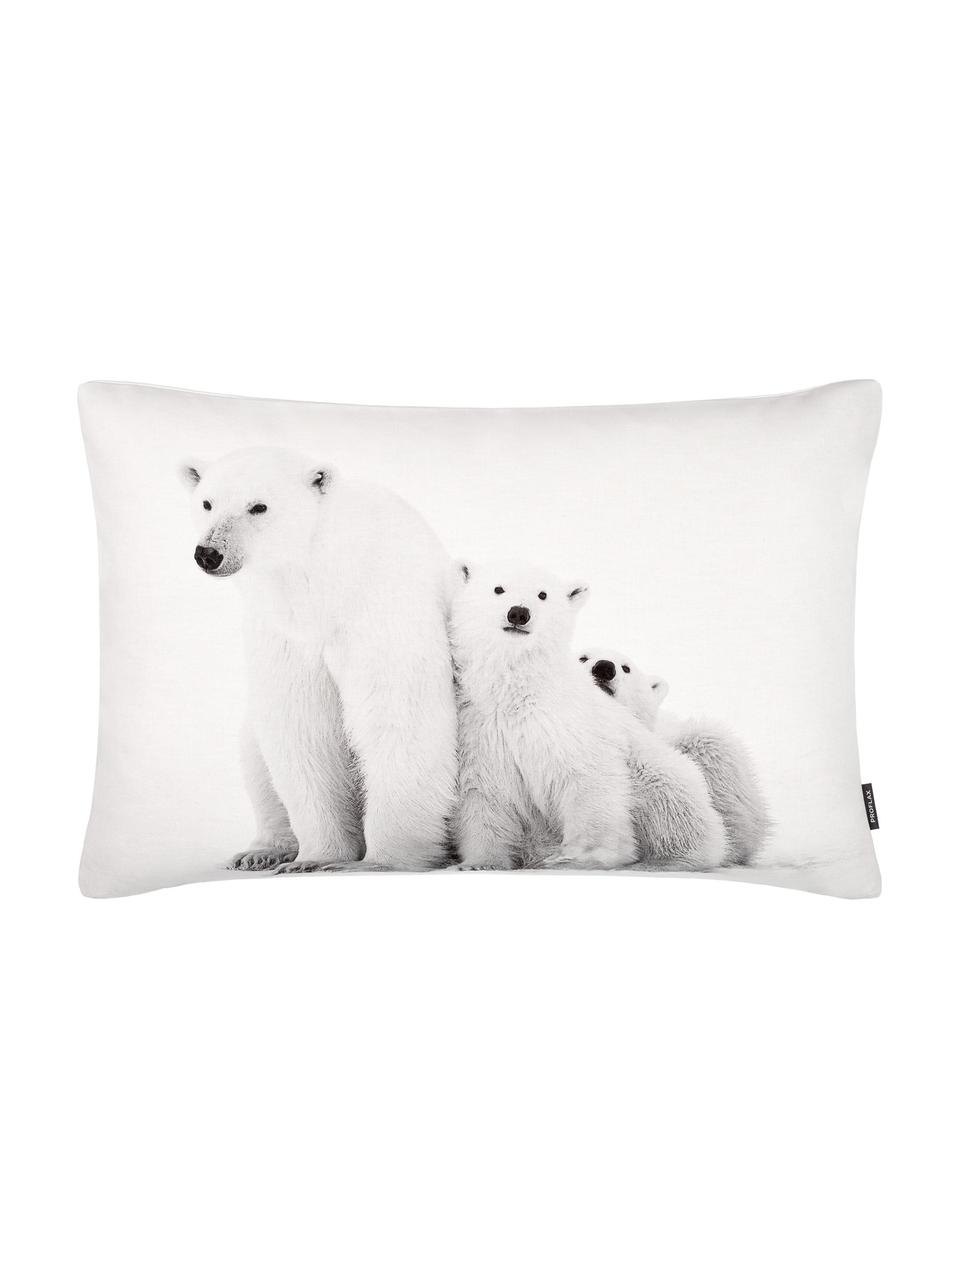 Federa con orsi polari Cool, Cotone, Bianco, tonalità grigie, Larg. 40 x Lung. 60 cm